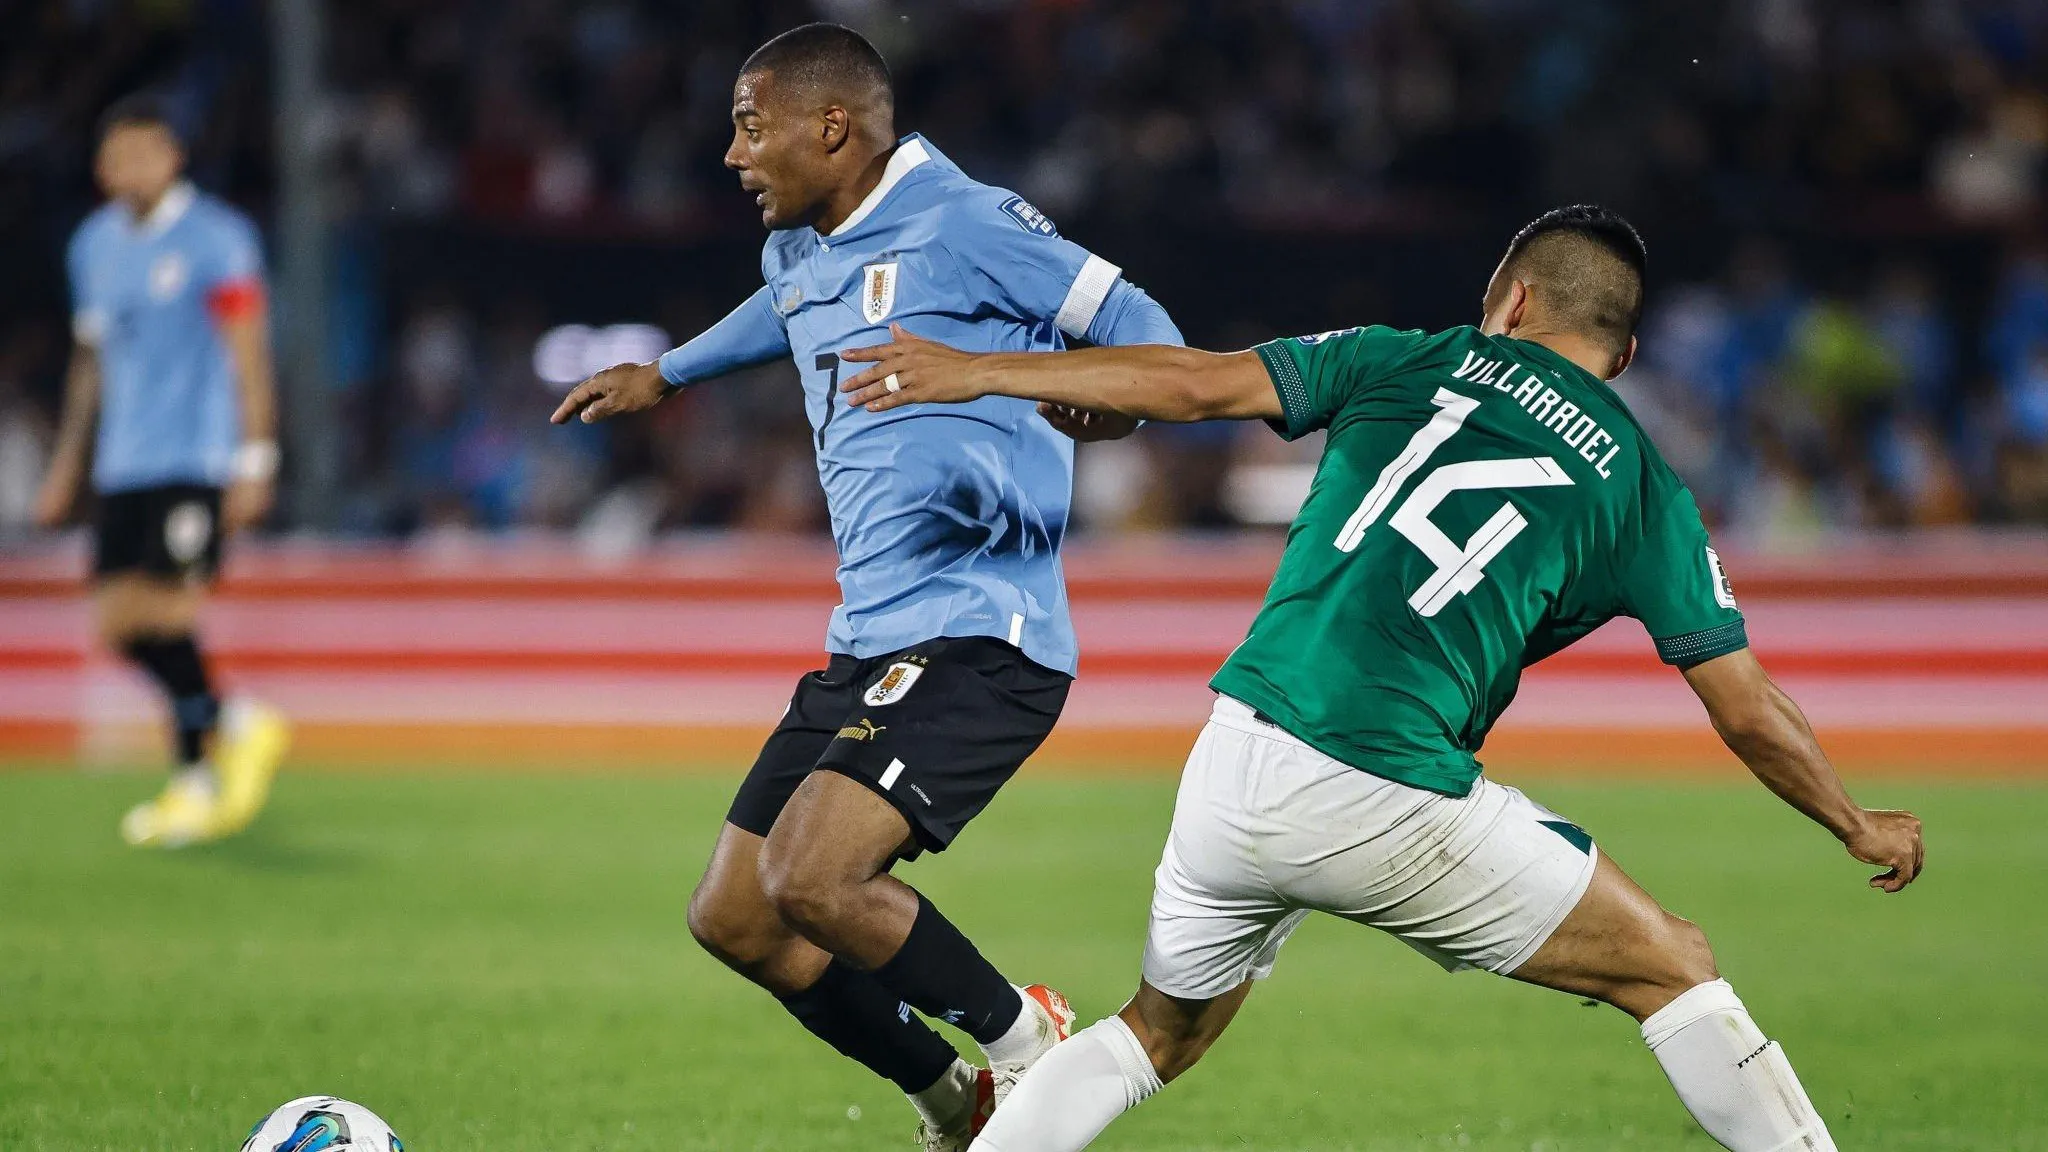 El jugador de Uruguay que no vió minutos en el Mundial y hoy es una pieza  clave para Bielsa